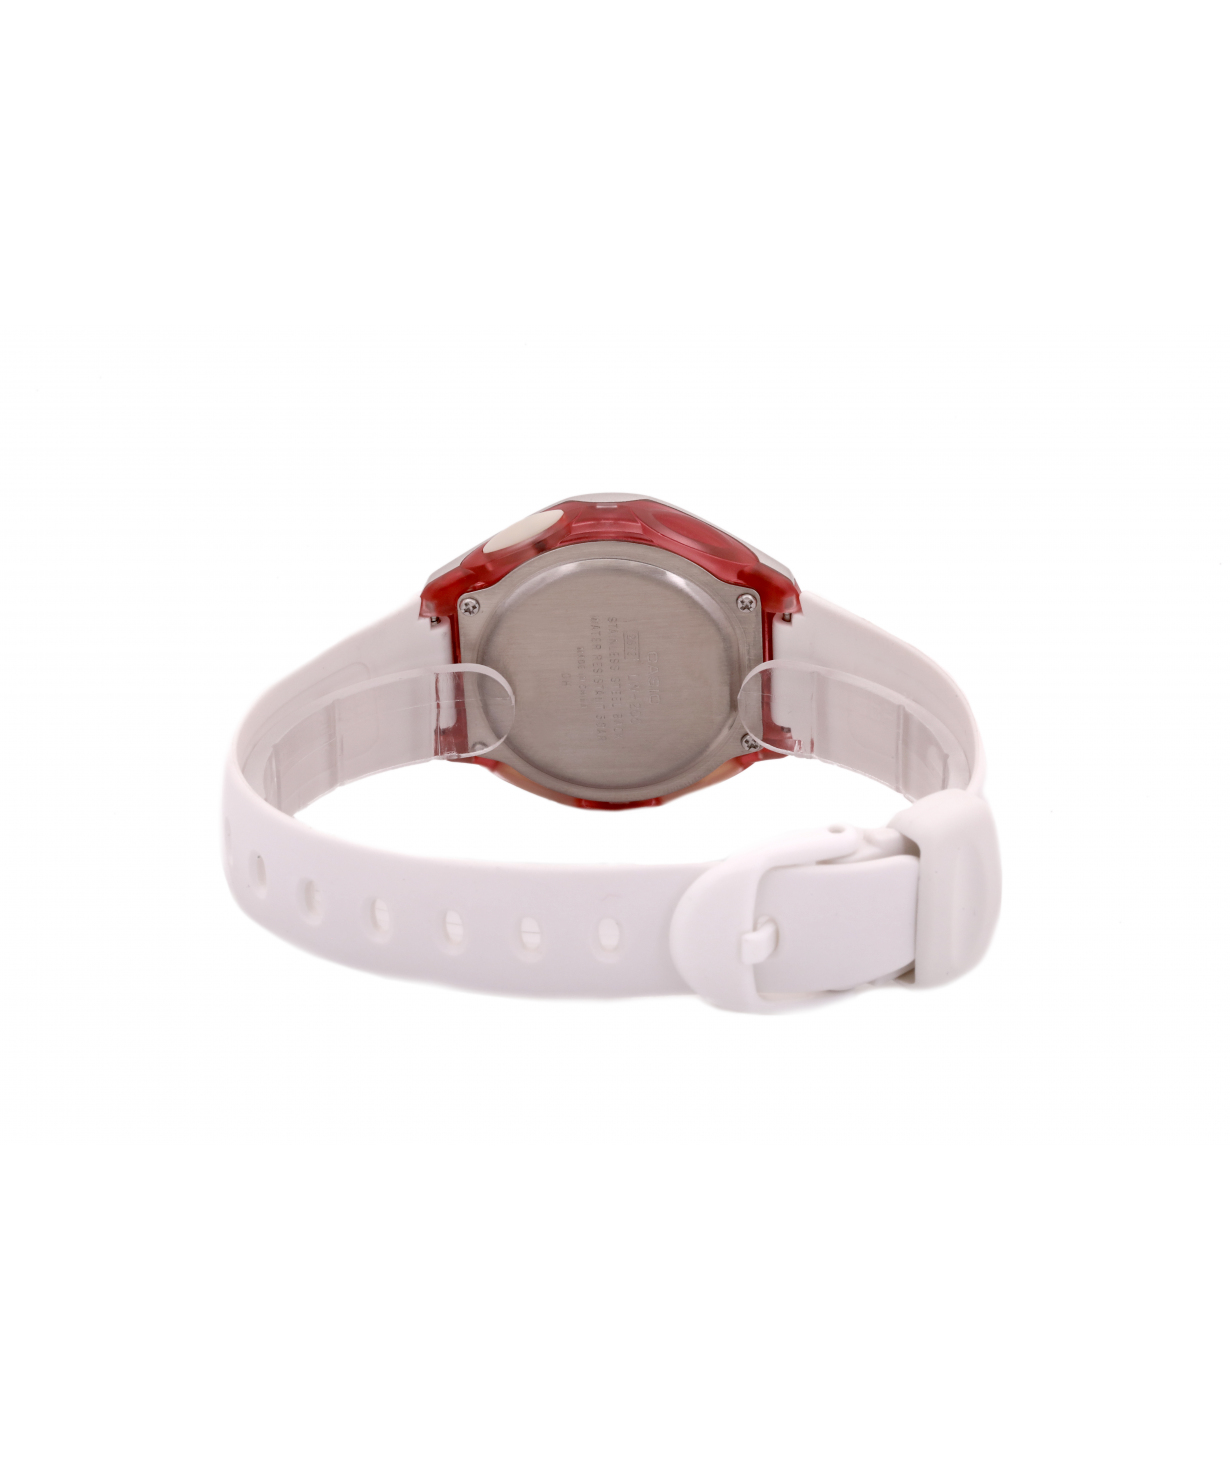 Wristwatch  `Casio` LW-200-7AVDF